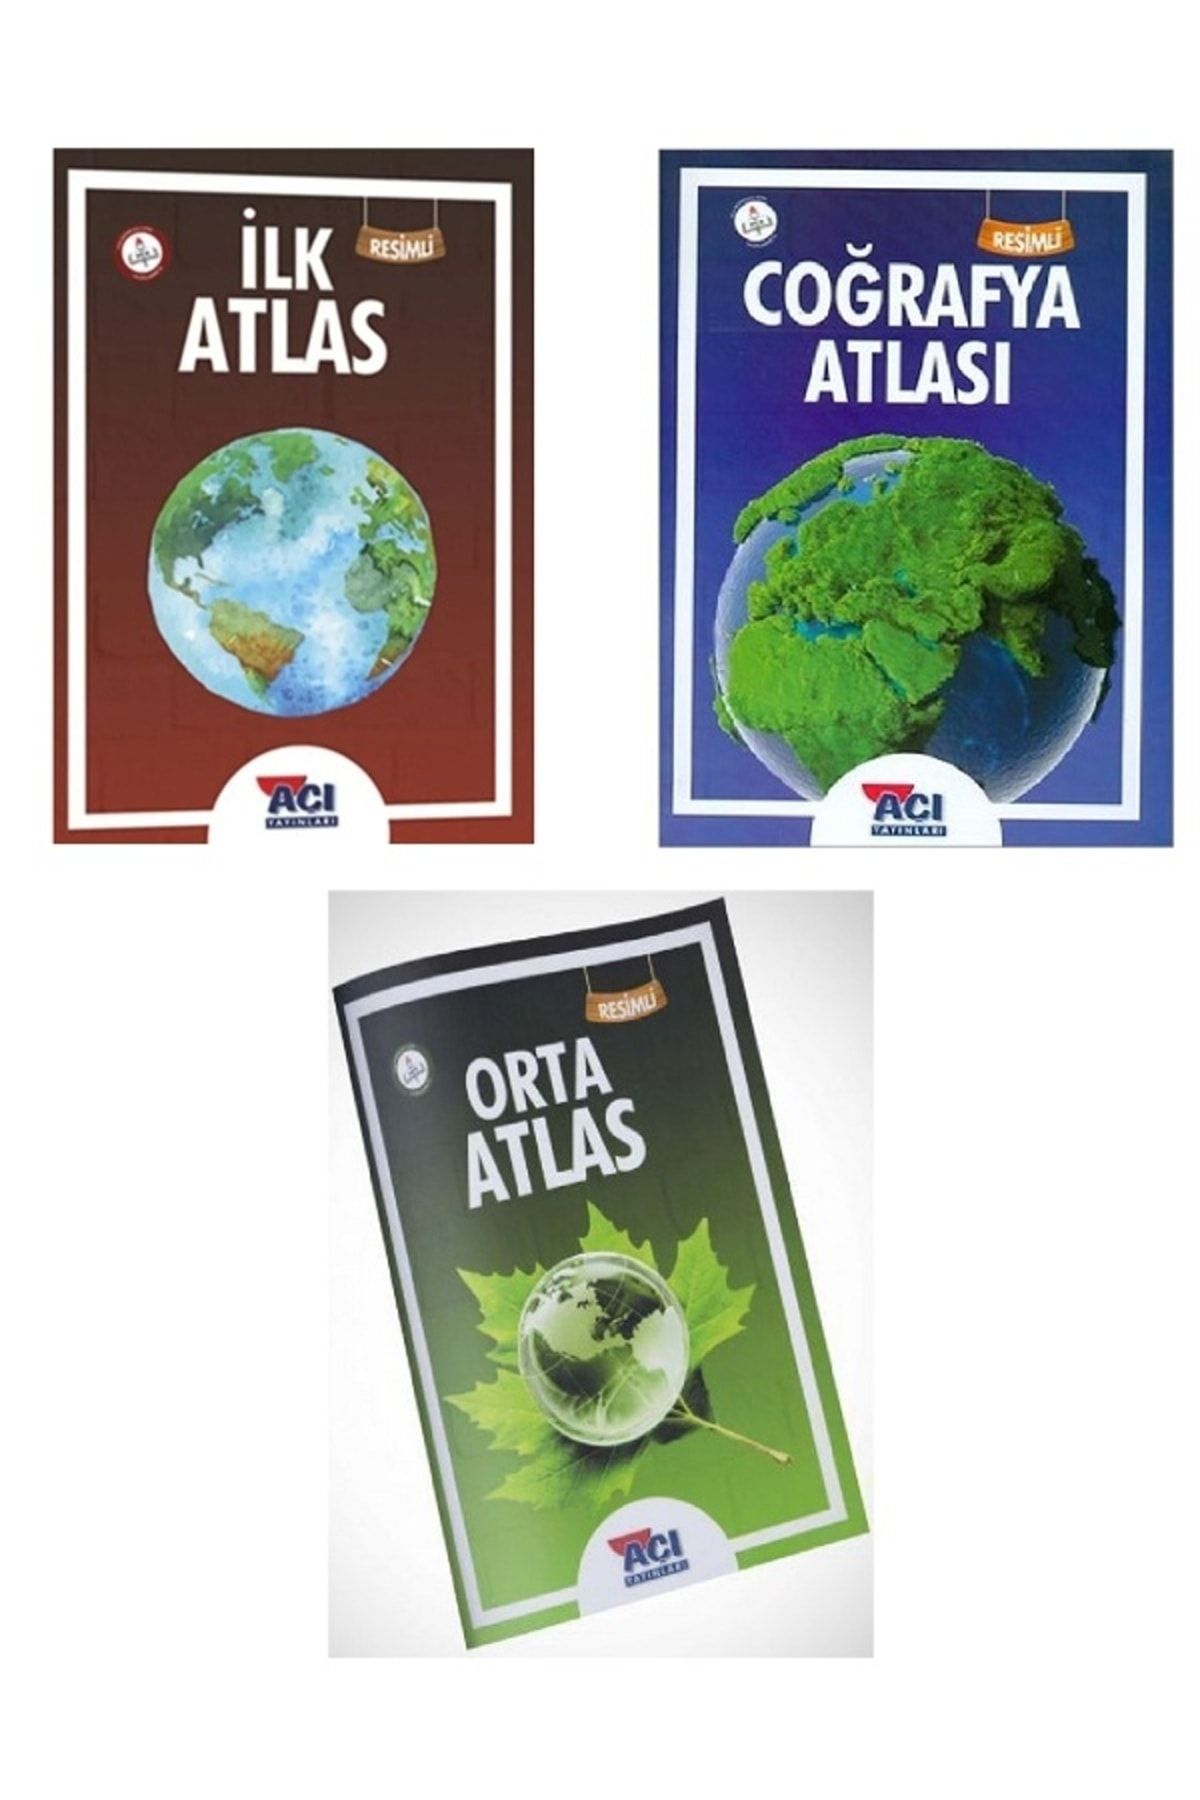 Açı Yayınları Atlas Resimli Atlas - Coğrafya Atlası - Orta Atlası - İlkAtlası Açı Yayınları